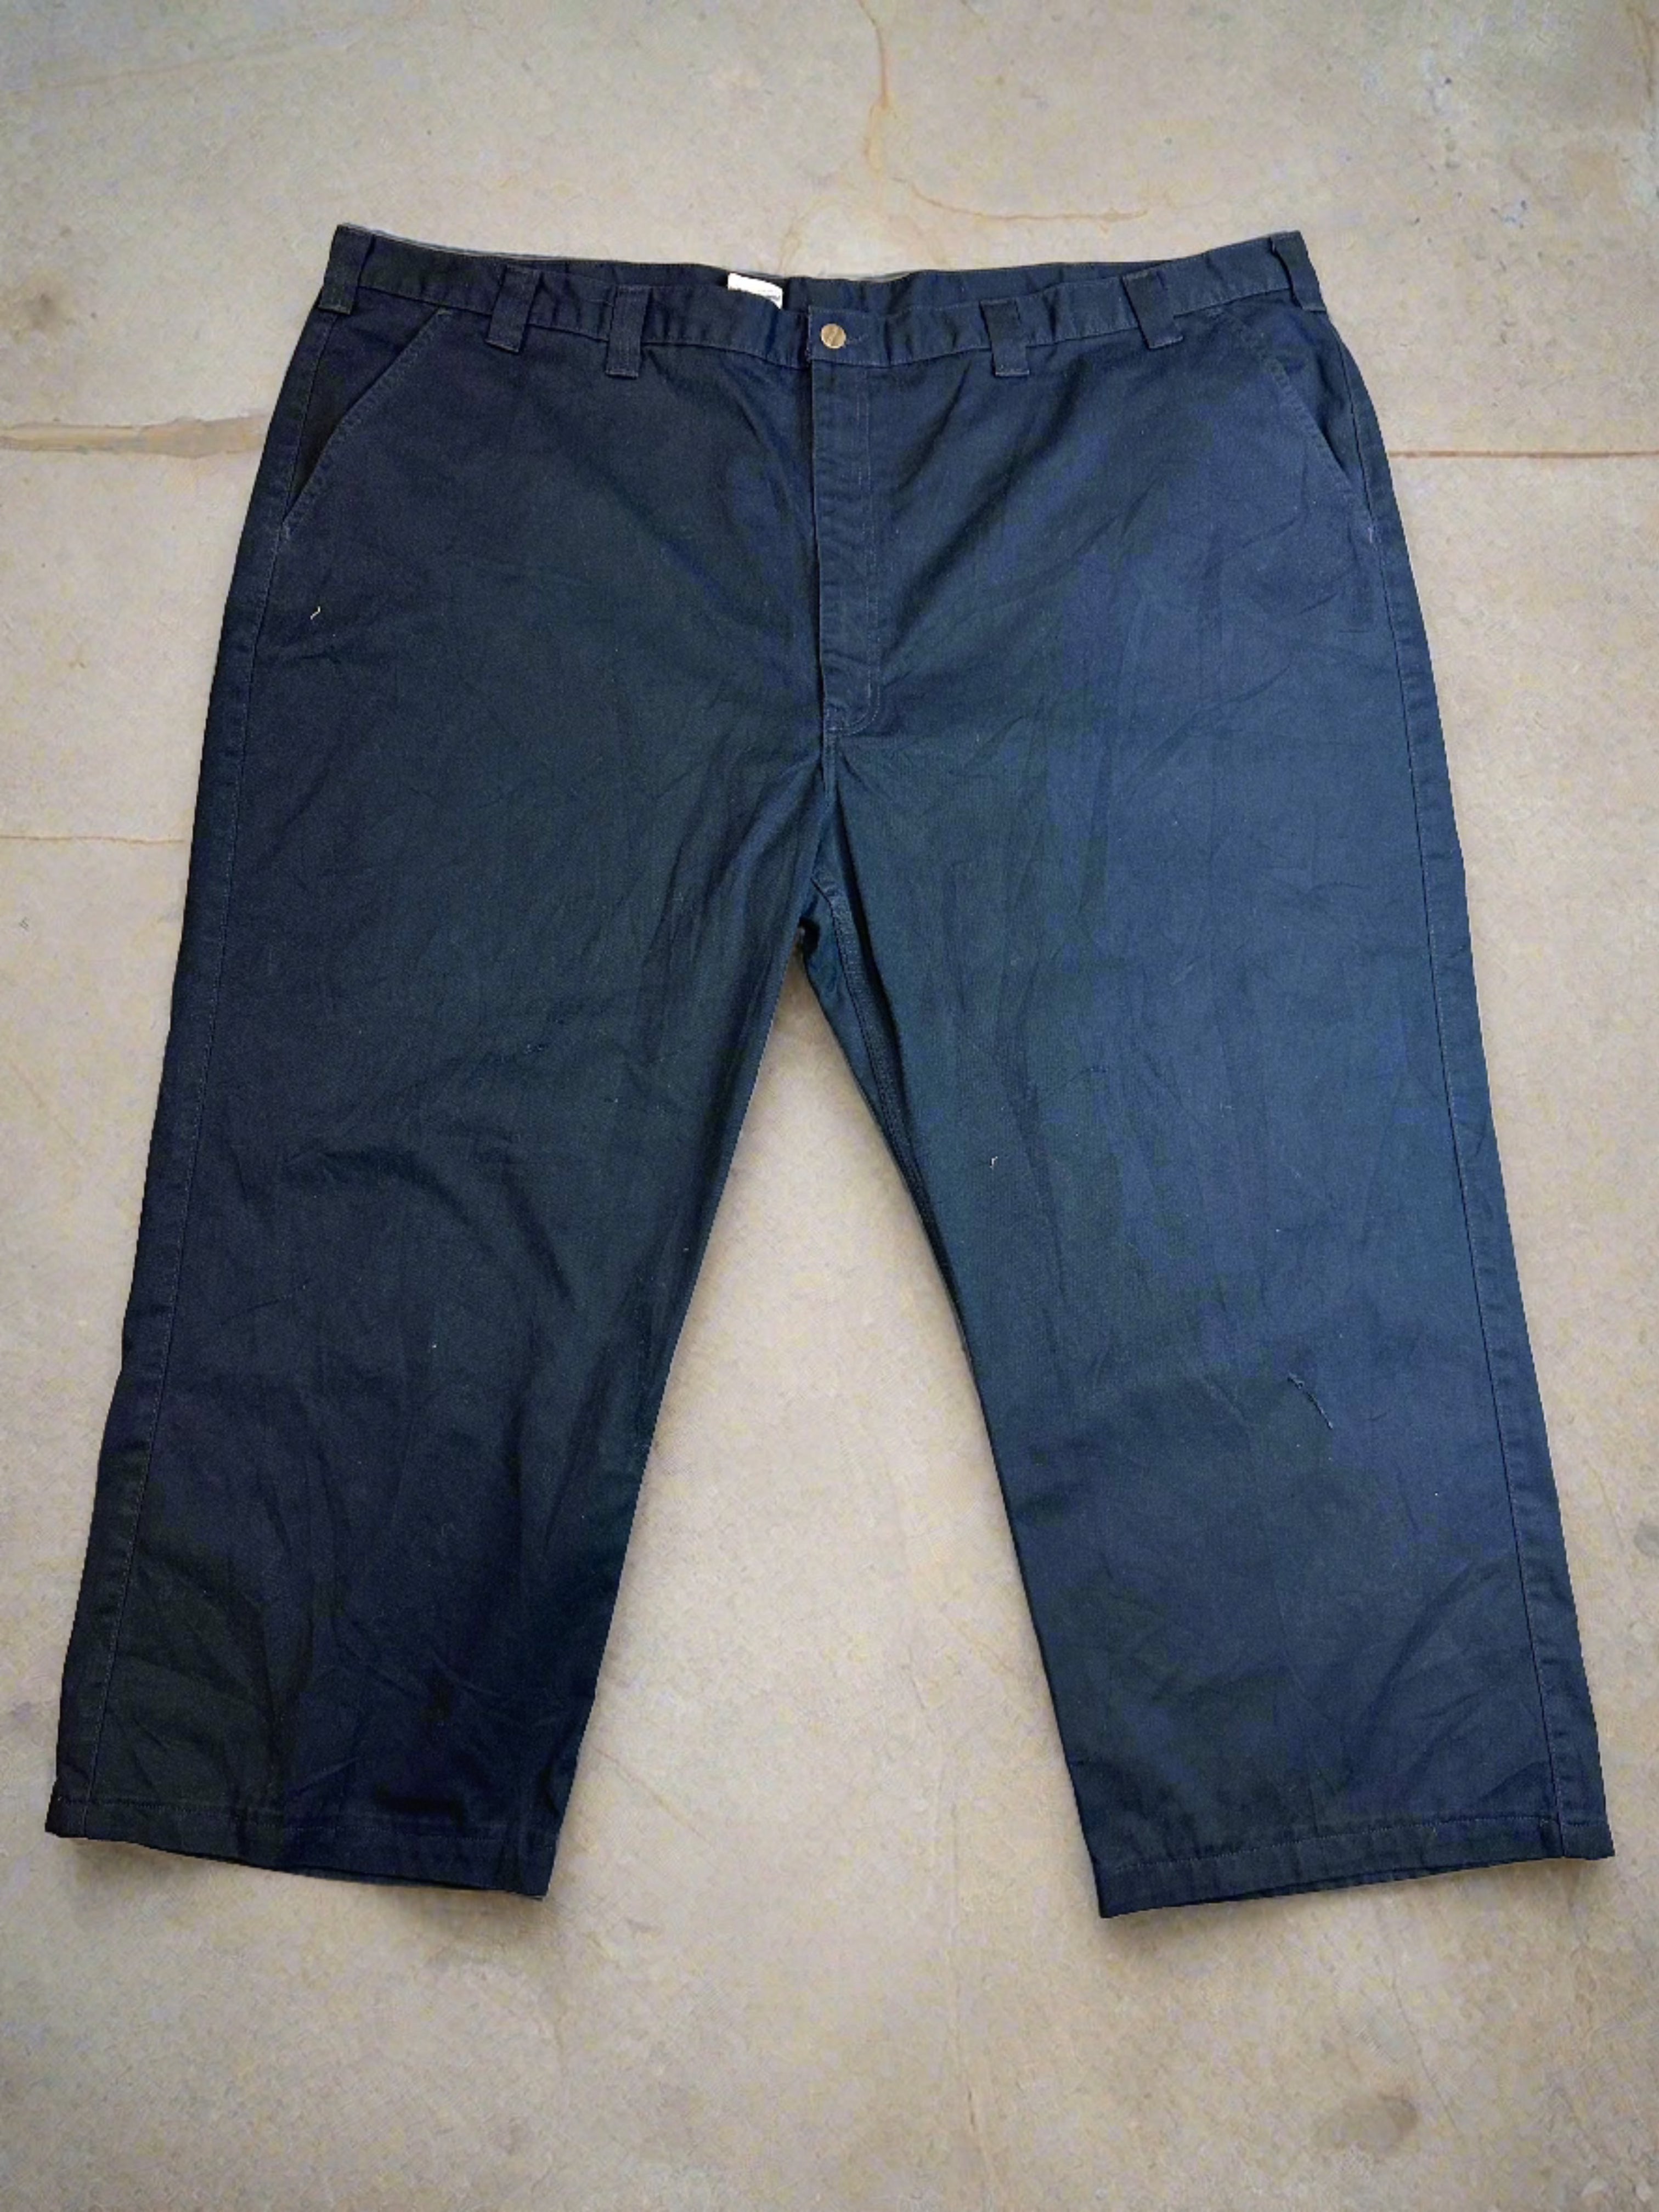 Vintage Carhartt Pants - size 54x32